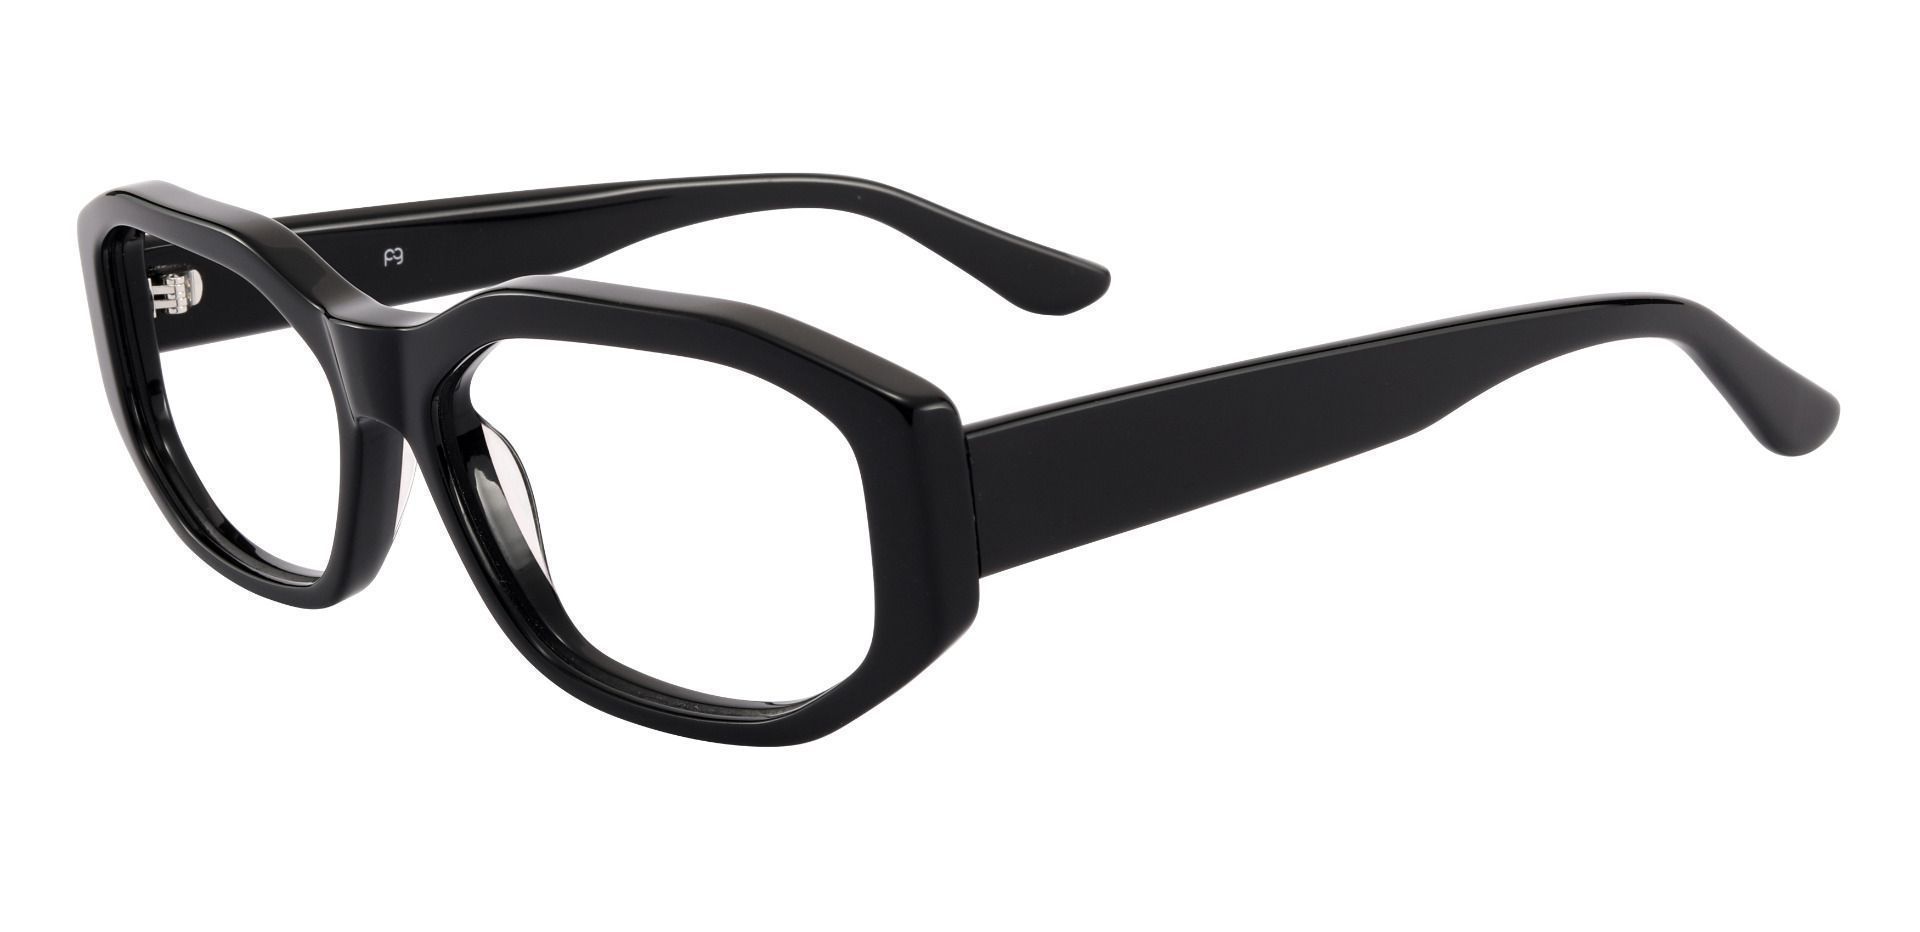 Sayre Rectangle Non-Rx Glasses - Black